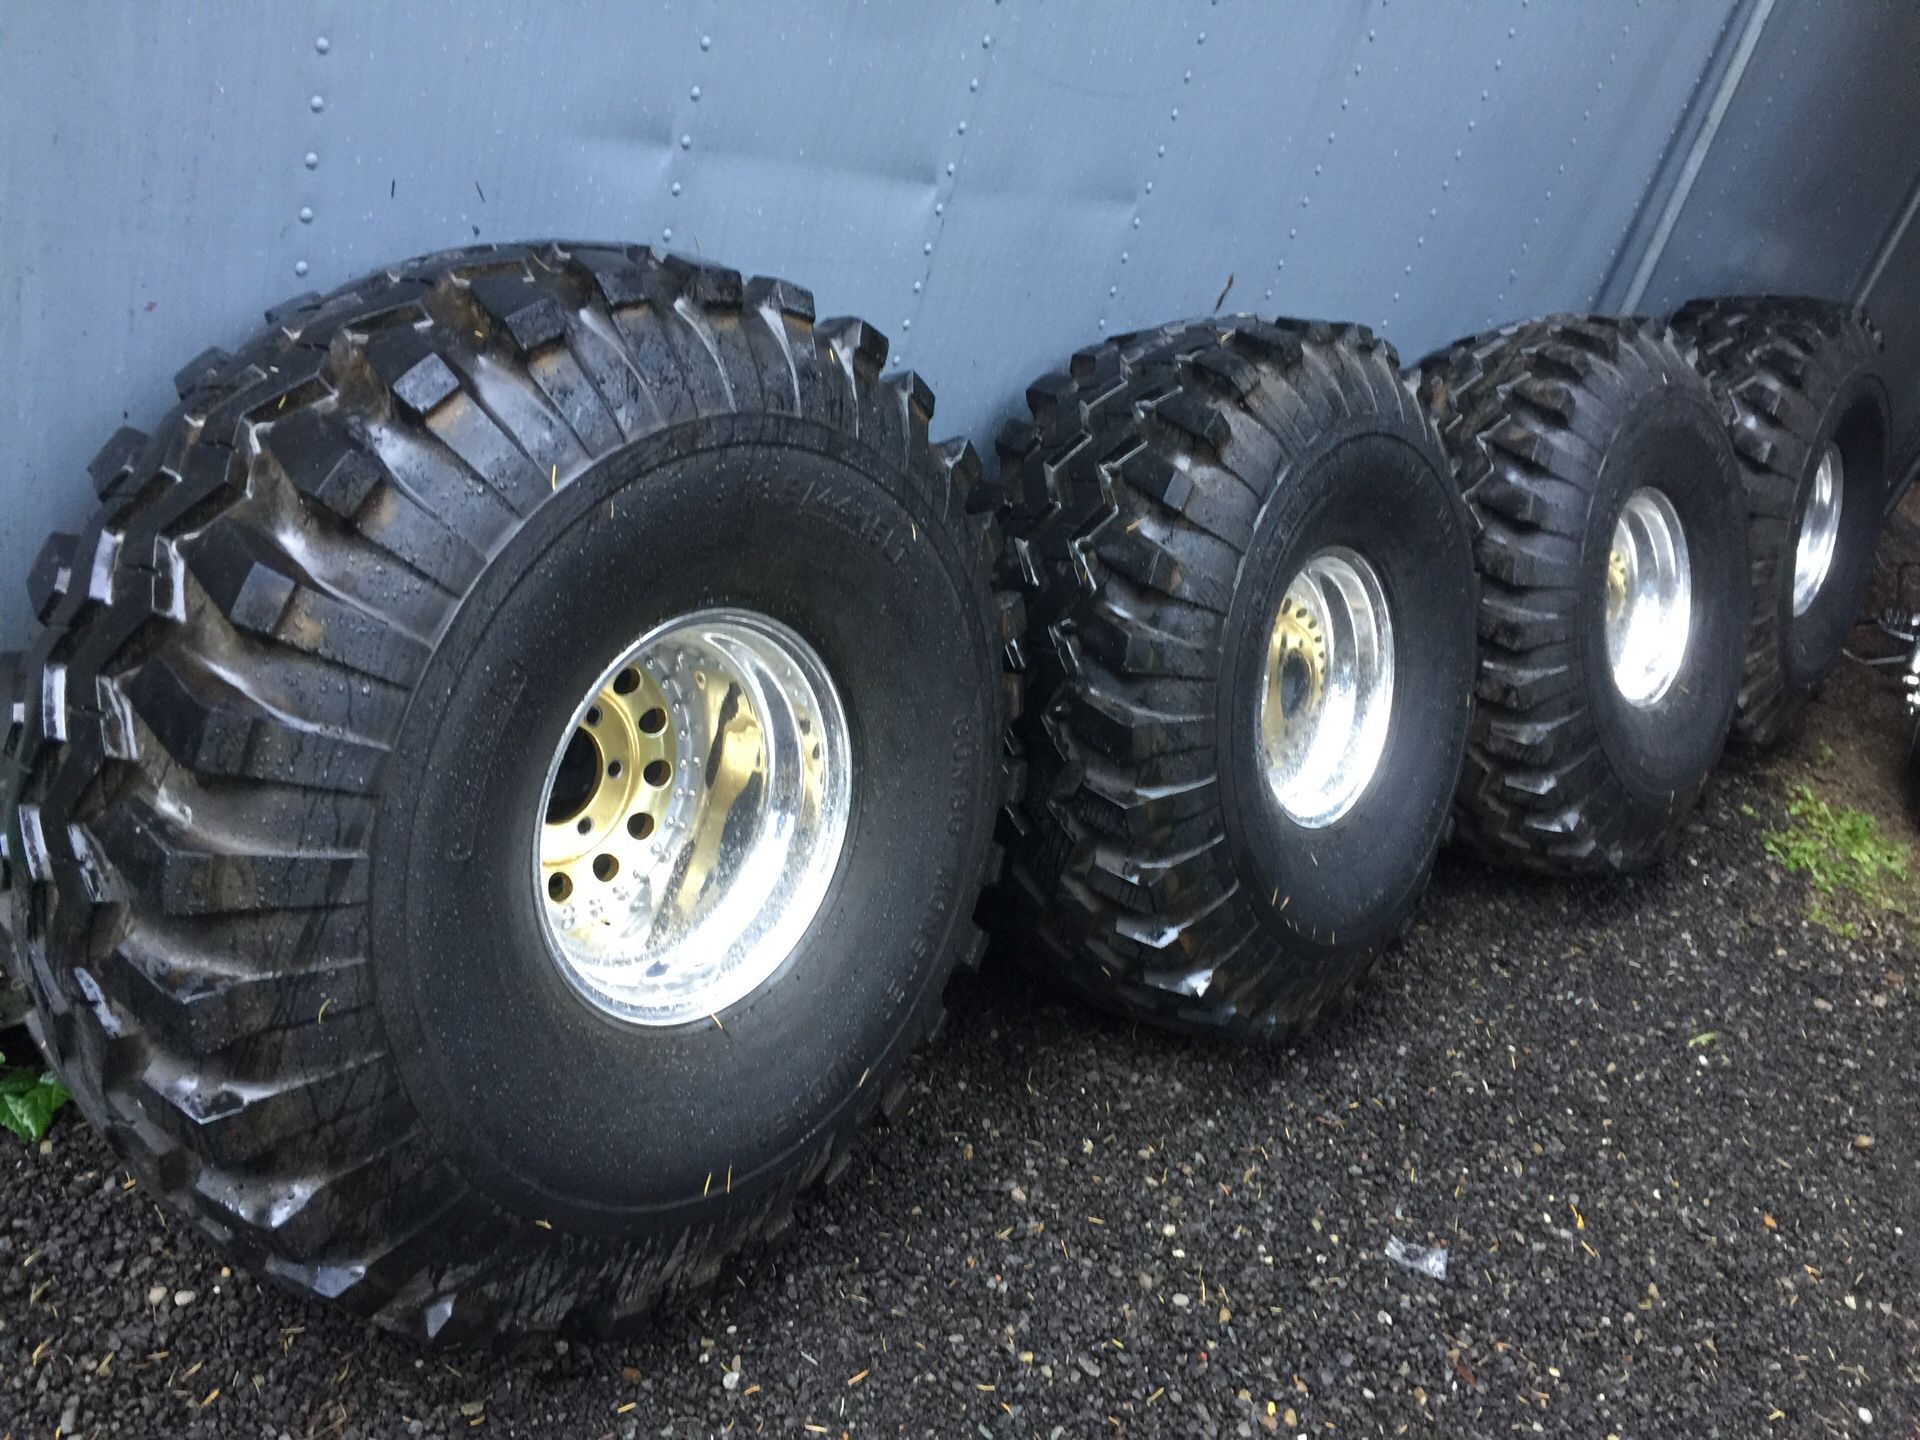 44/18.5-15 mudders on centerline 15x12 wheels